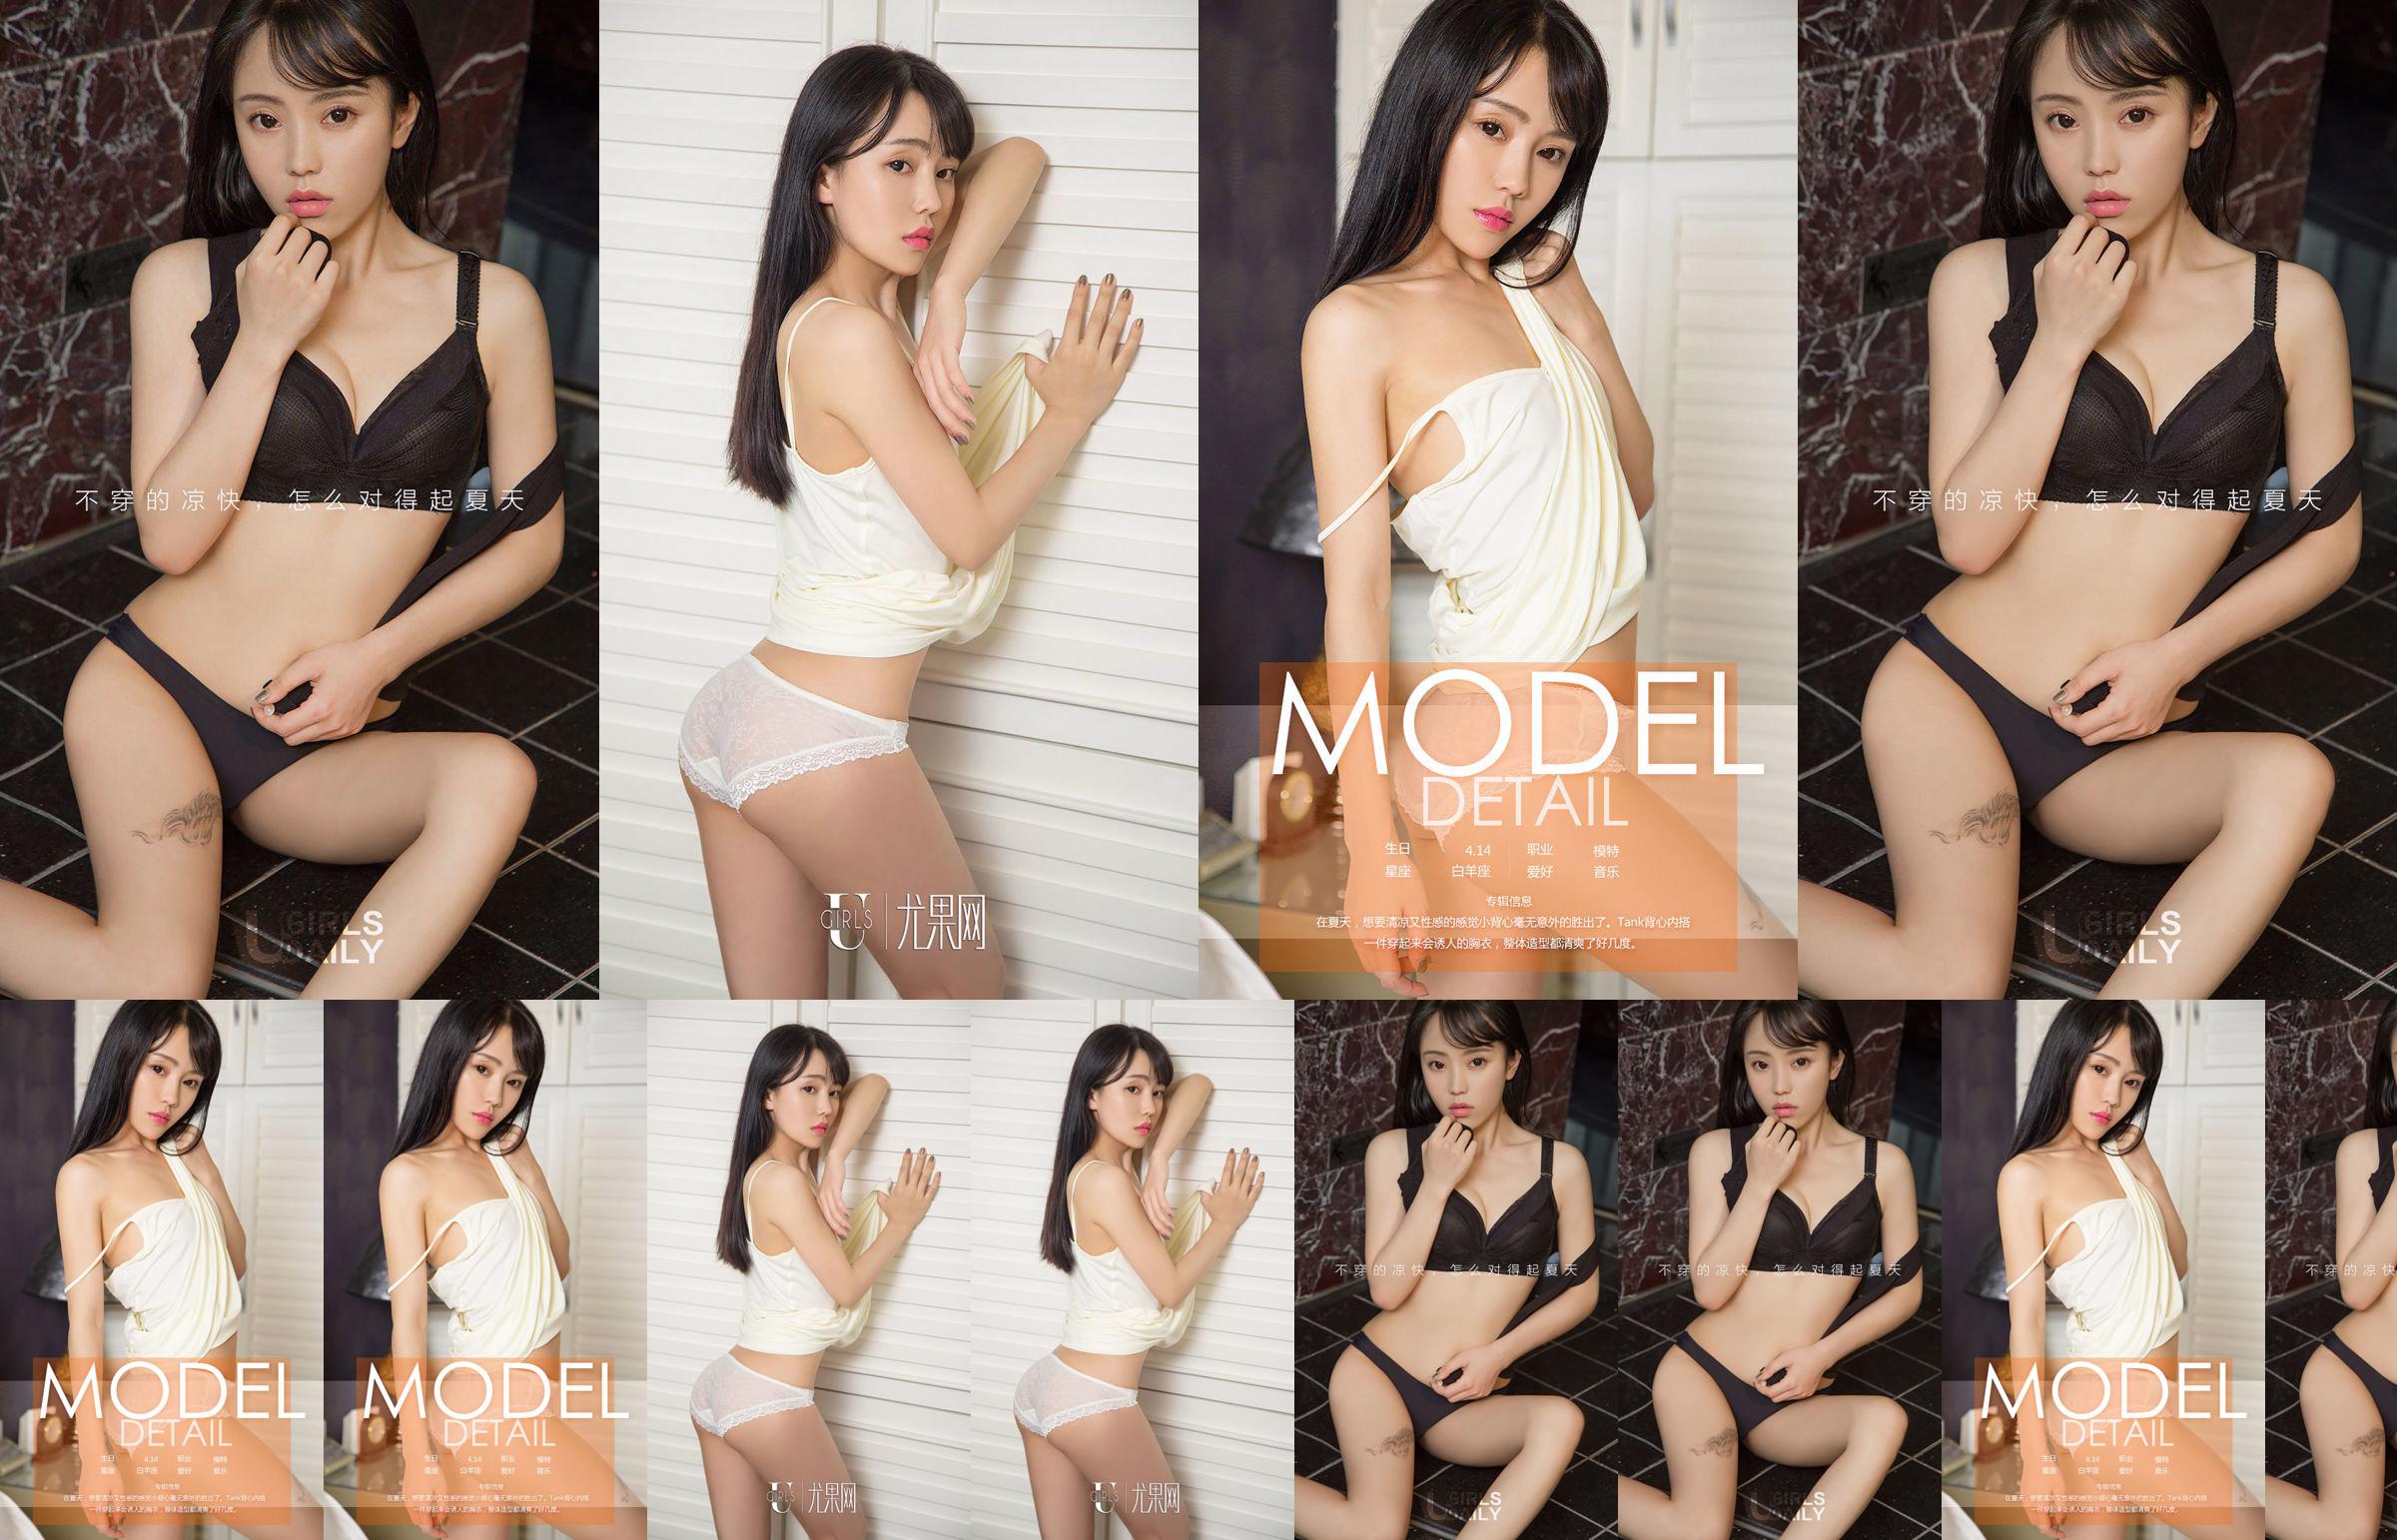 Ah V "Cool en sexy" [Youguoquan] No.783 No.5f4489 Pagina 4